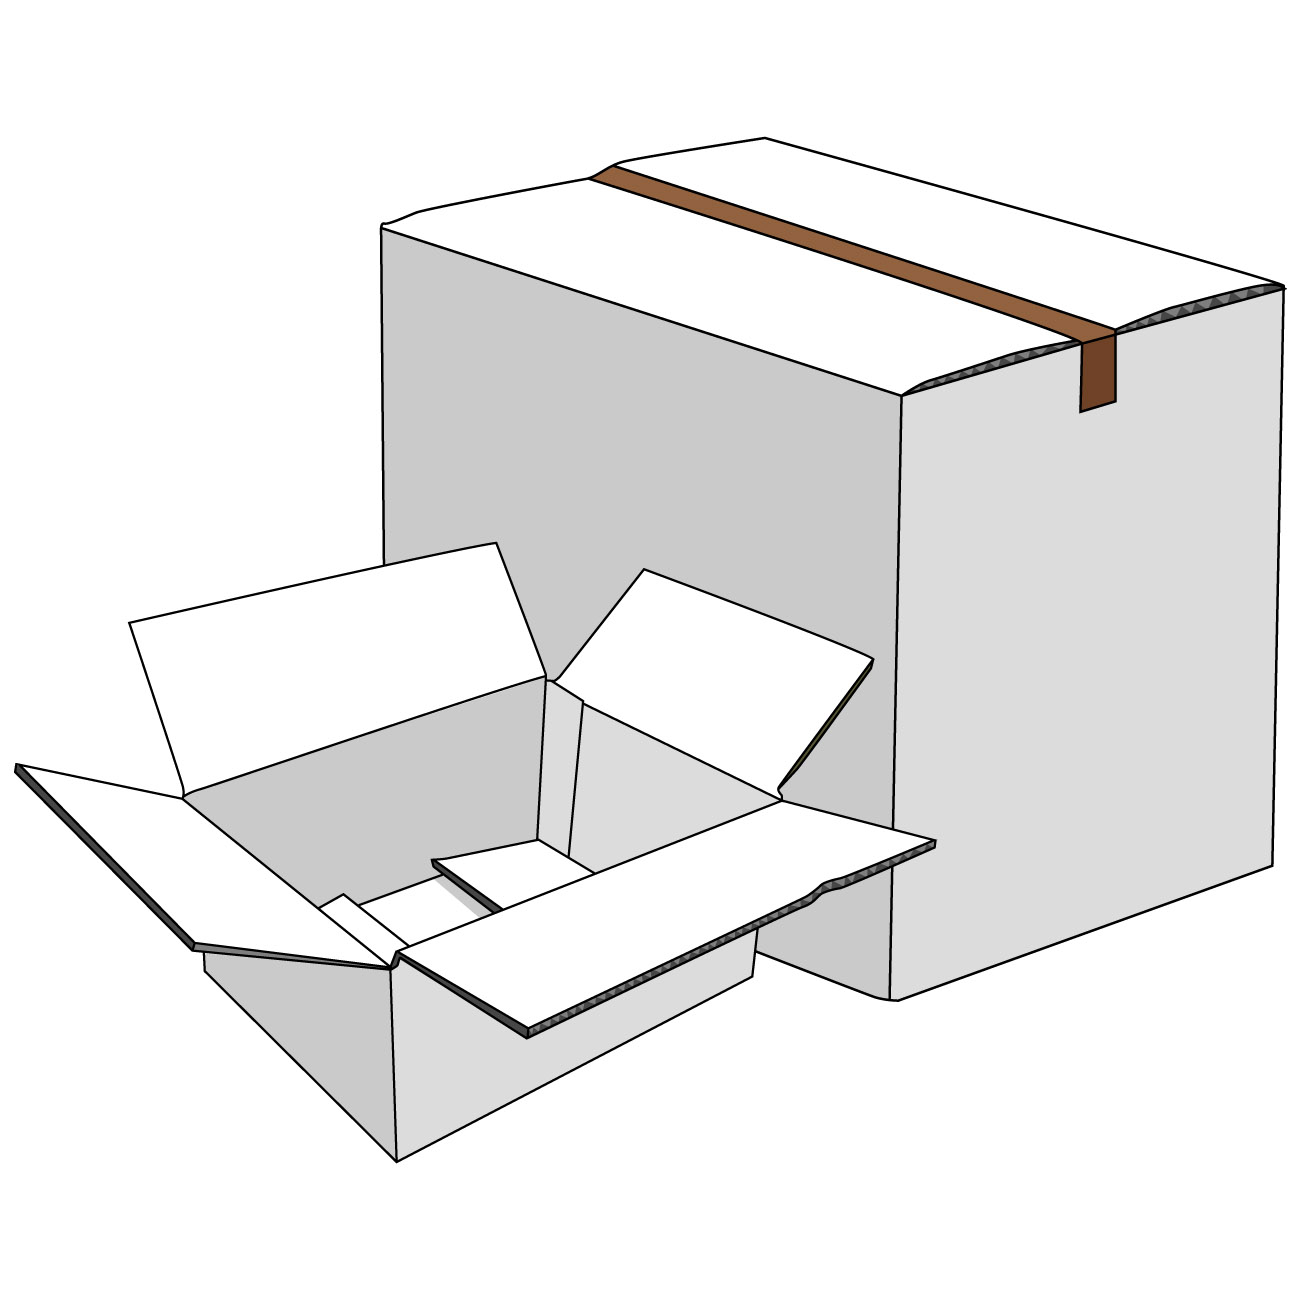 会員登録不要で無料でダウンロードできる段ボール箱のイラスト01（閉じている段ボール箱と並んでいる開いた段ボール箱・ホワイト）[JPG]